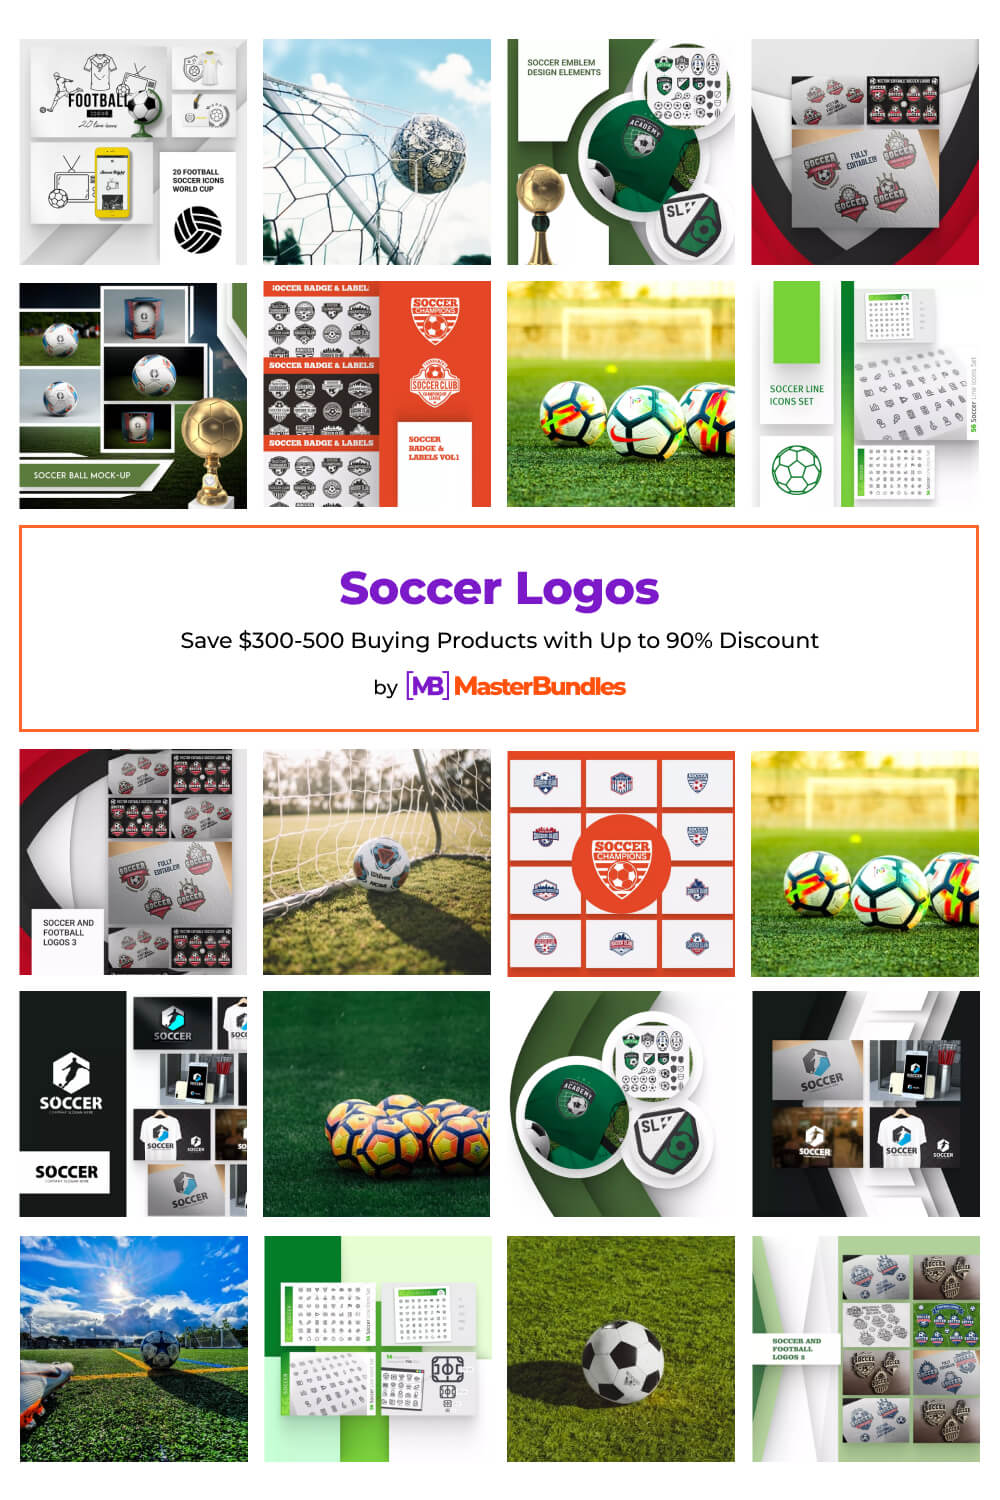 soccer logos pinterest image.